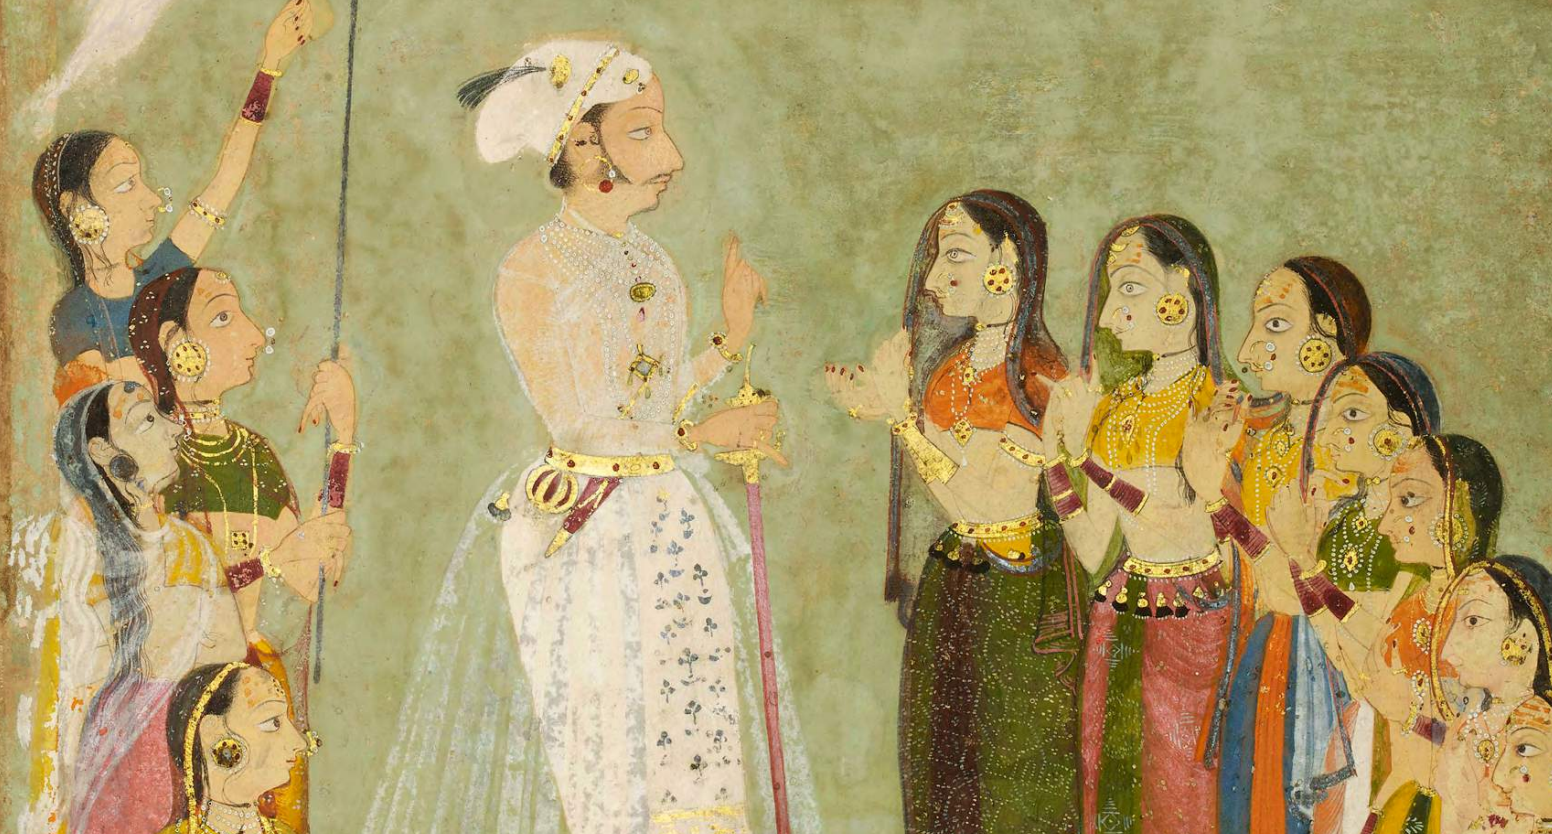 Prince Amar Singh of Mewar with ladies Udaipur, c. 1695, (detail) 